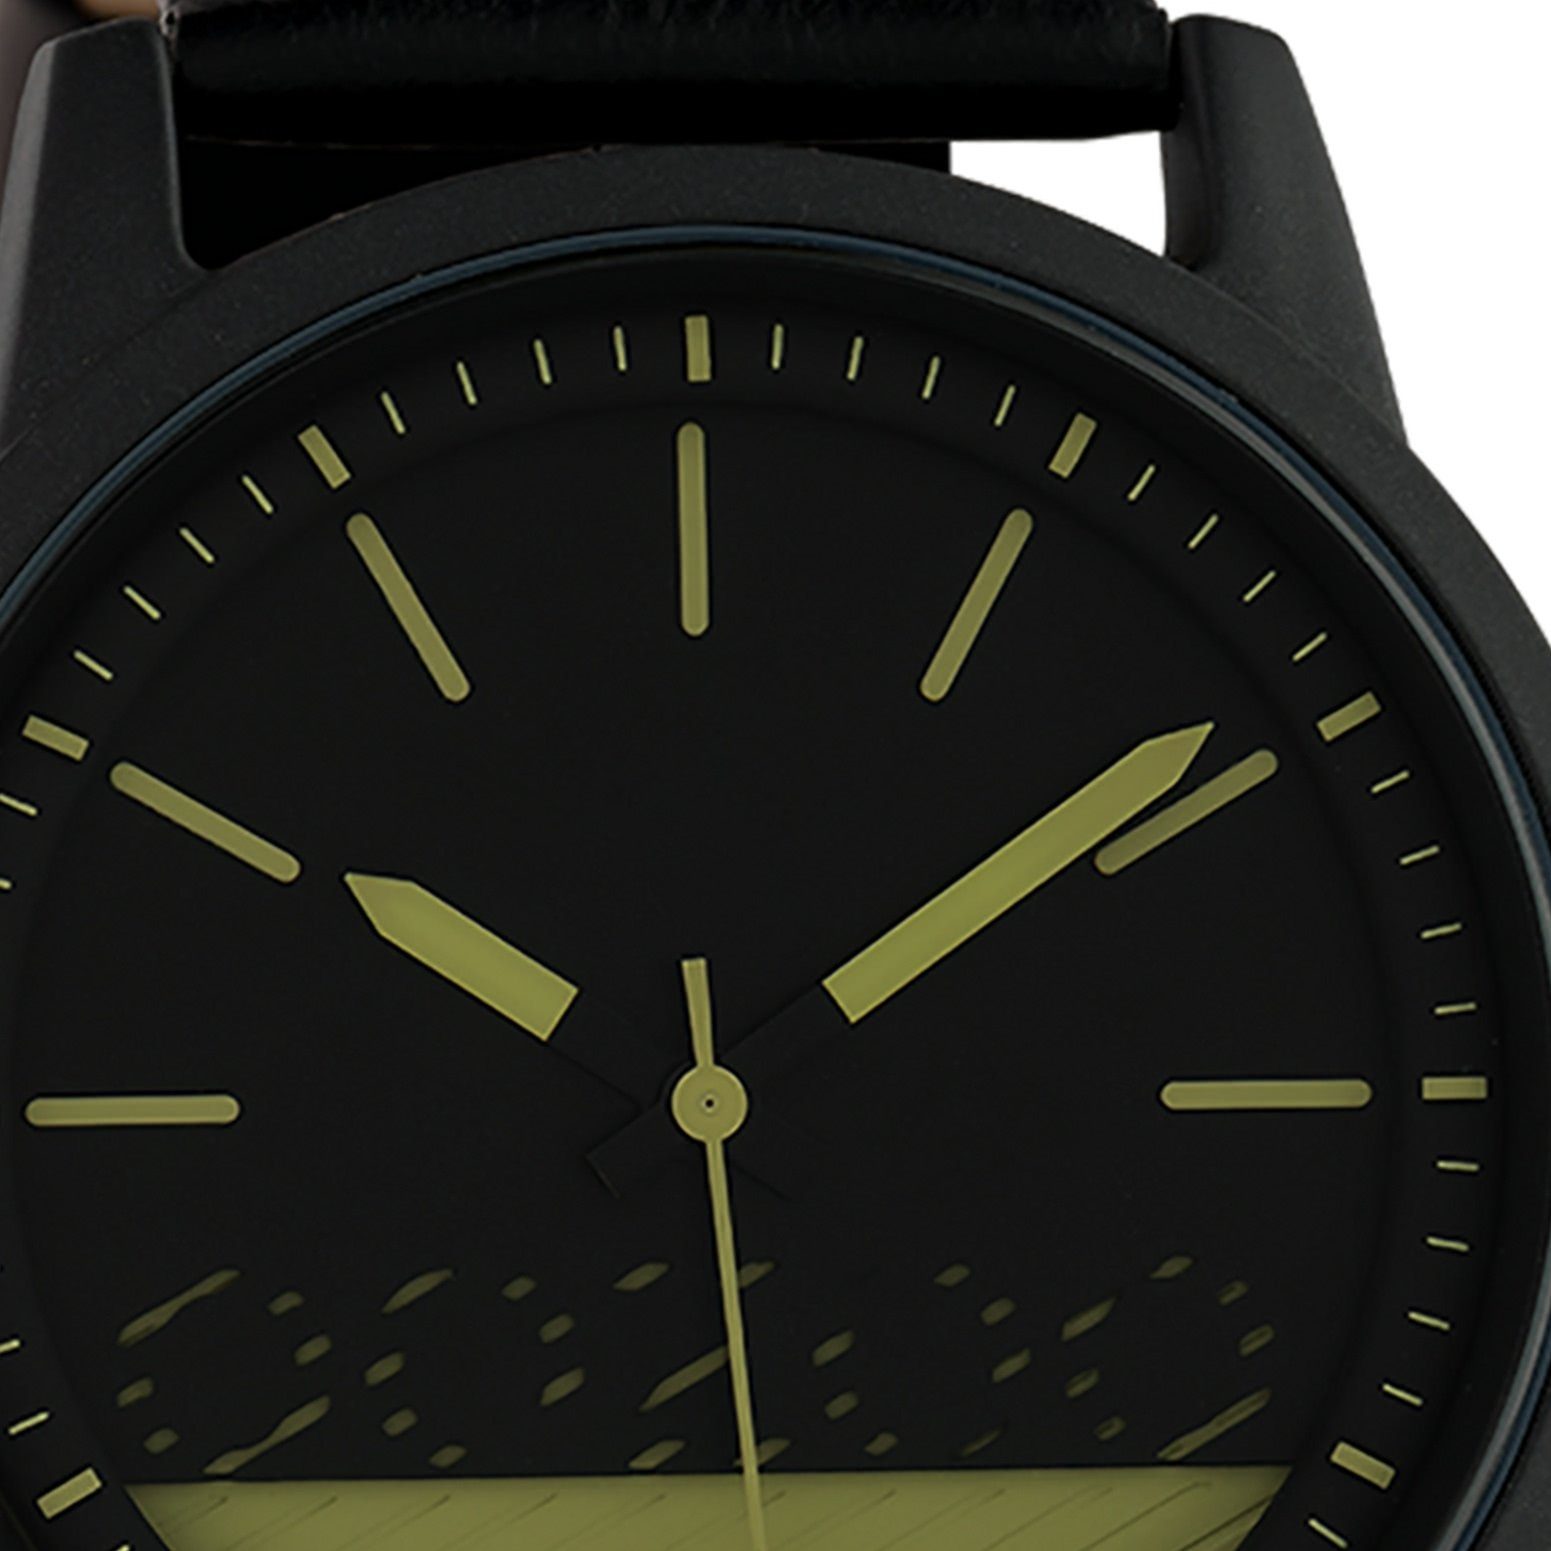 Armbanduhr 45mm), Timepieces, OOZOO rund, Lederarmband Oozoo Damenuhr schwarz, groß OOZOO Quarzuhr Damen (ca. Fashion